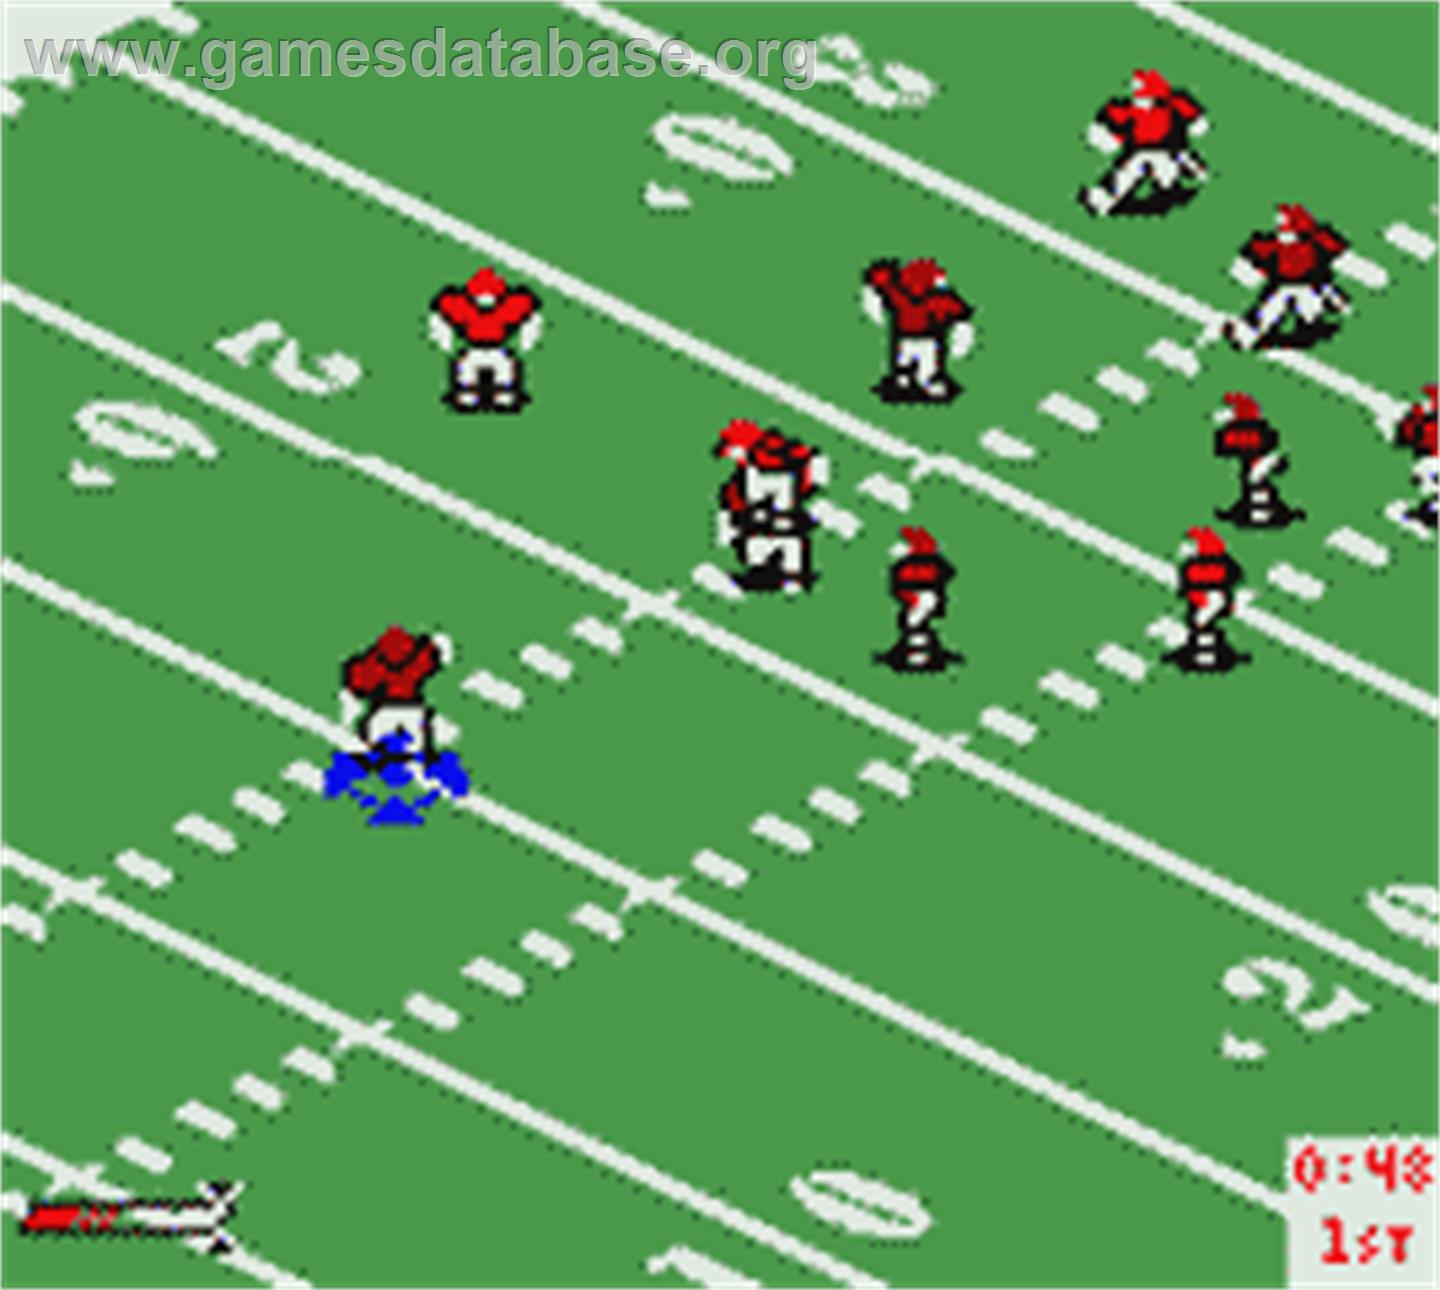 NFL Blitz - Nintendo Game Boy Color - Artwork - In Game